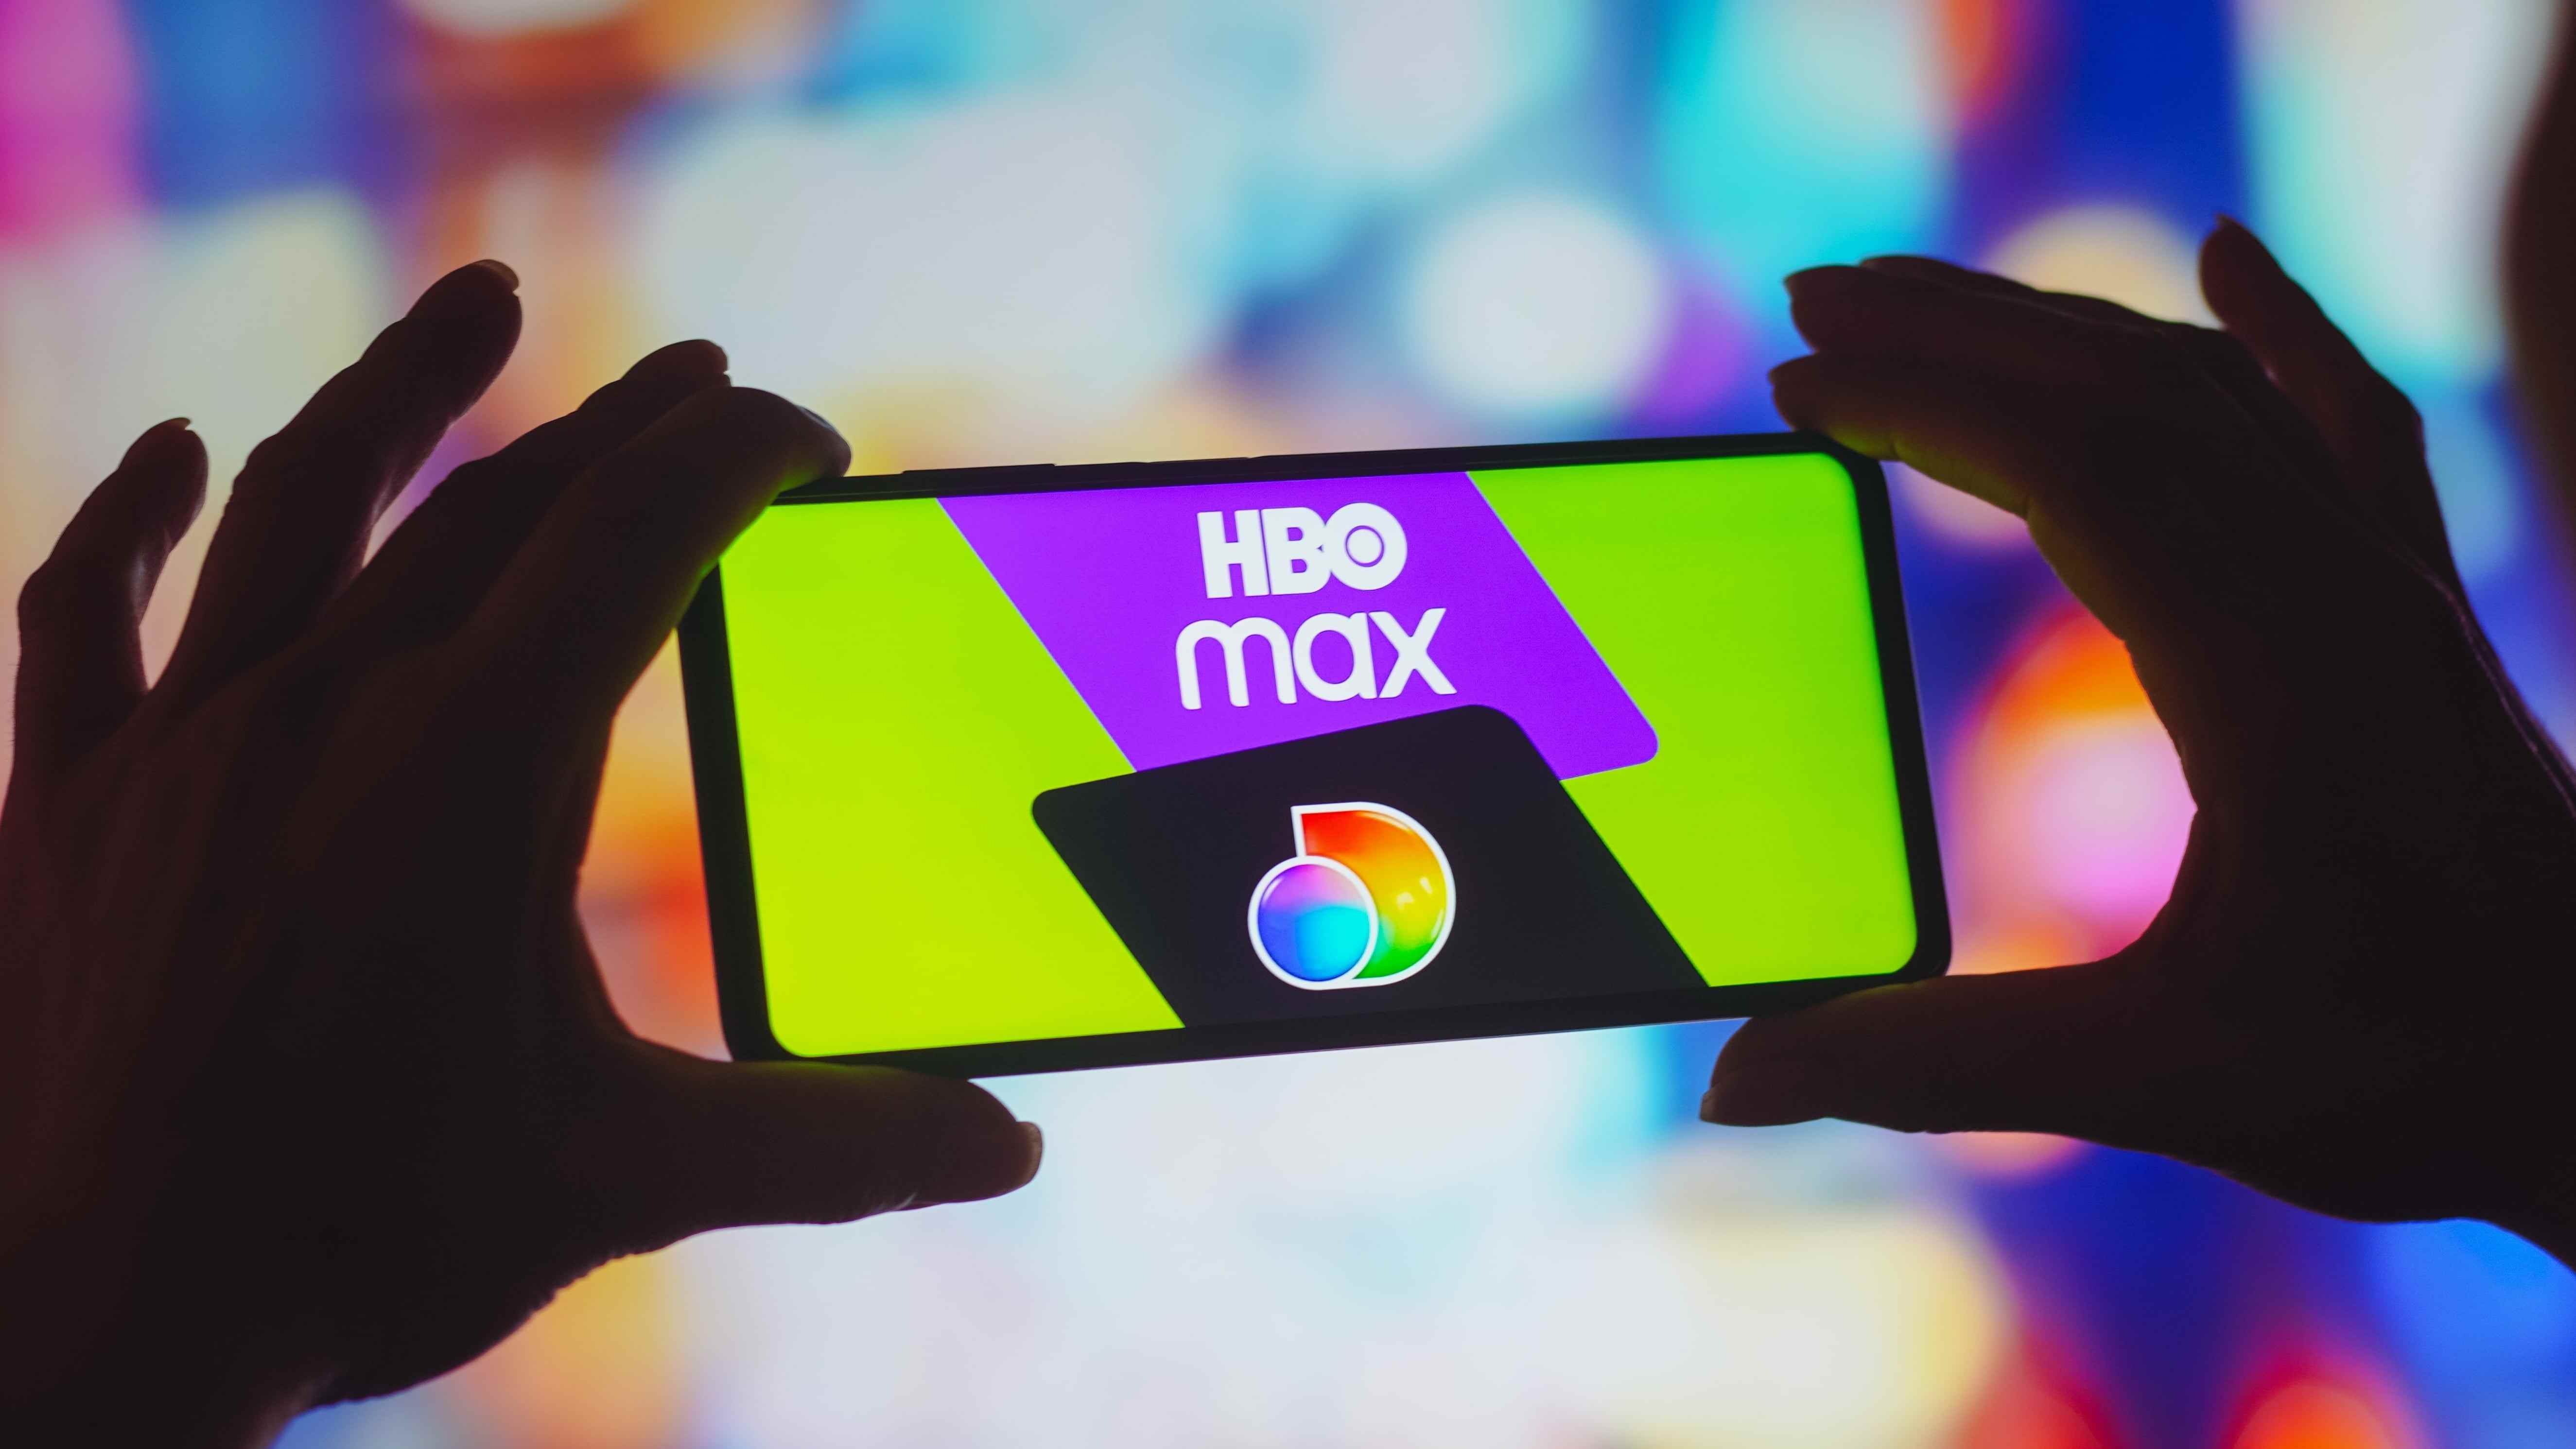 Akıllı telefon ekranında HBO Max ve Discovery Plus logoları